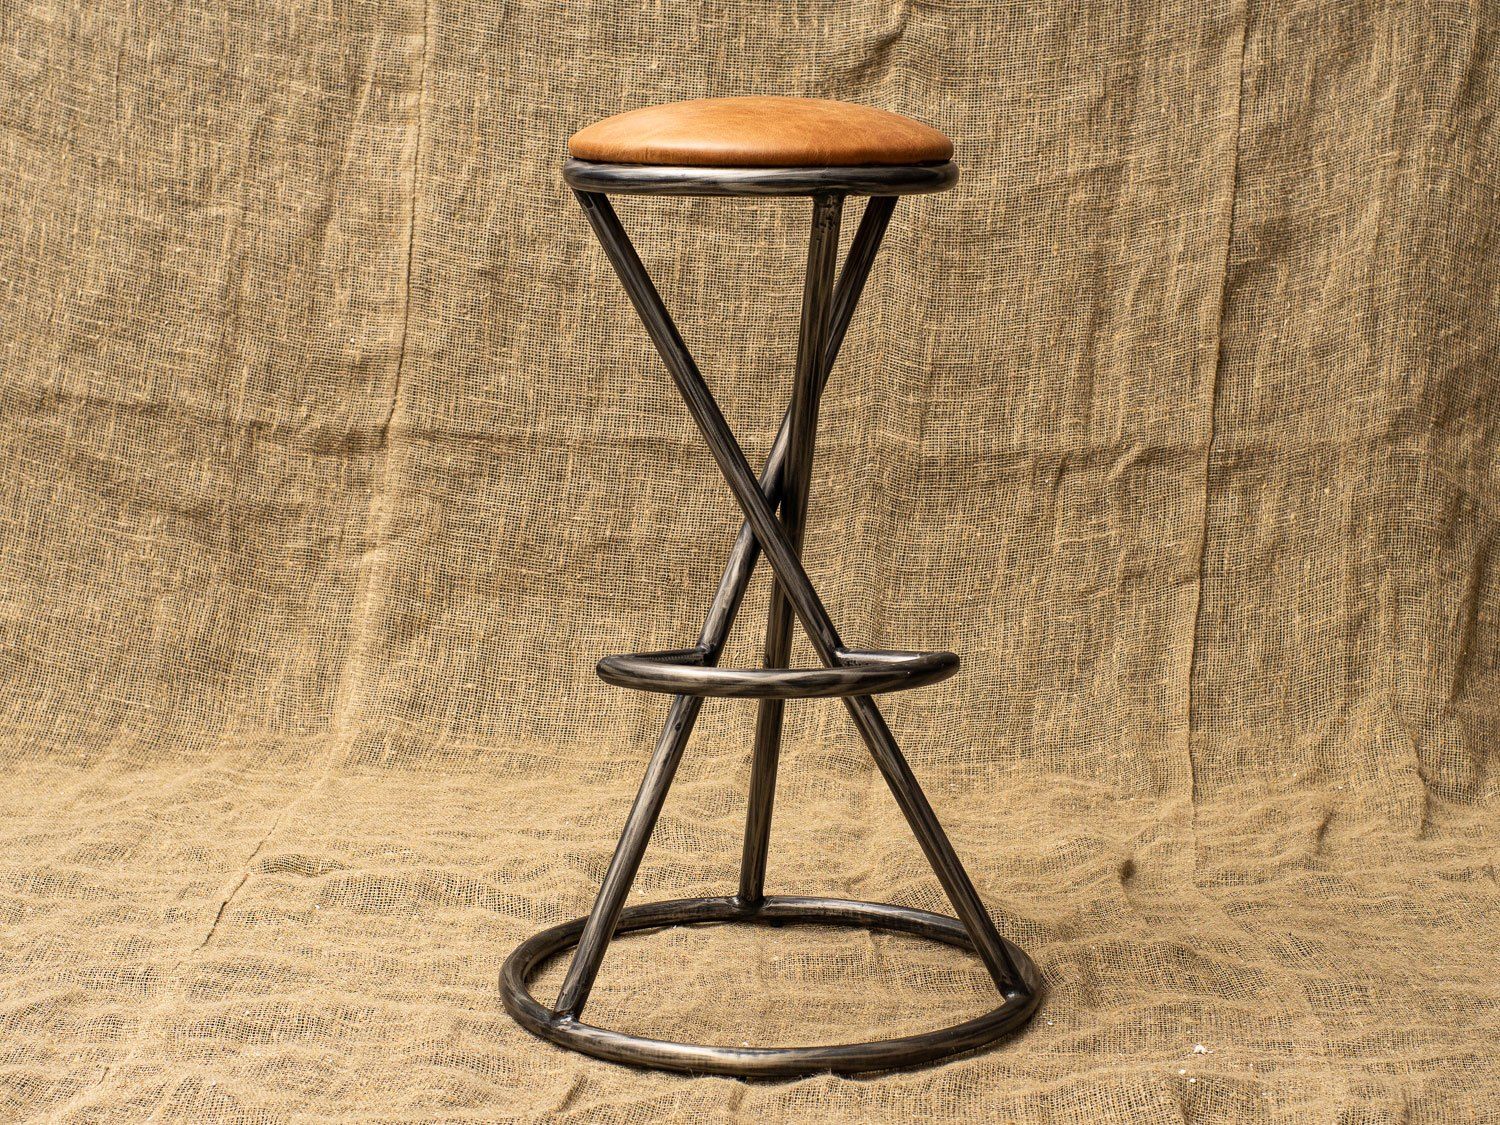 BOLET by Romatti bar stool